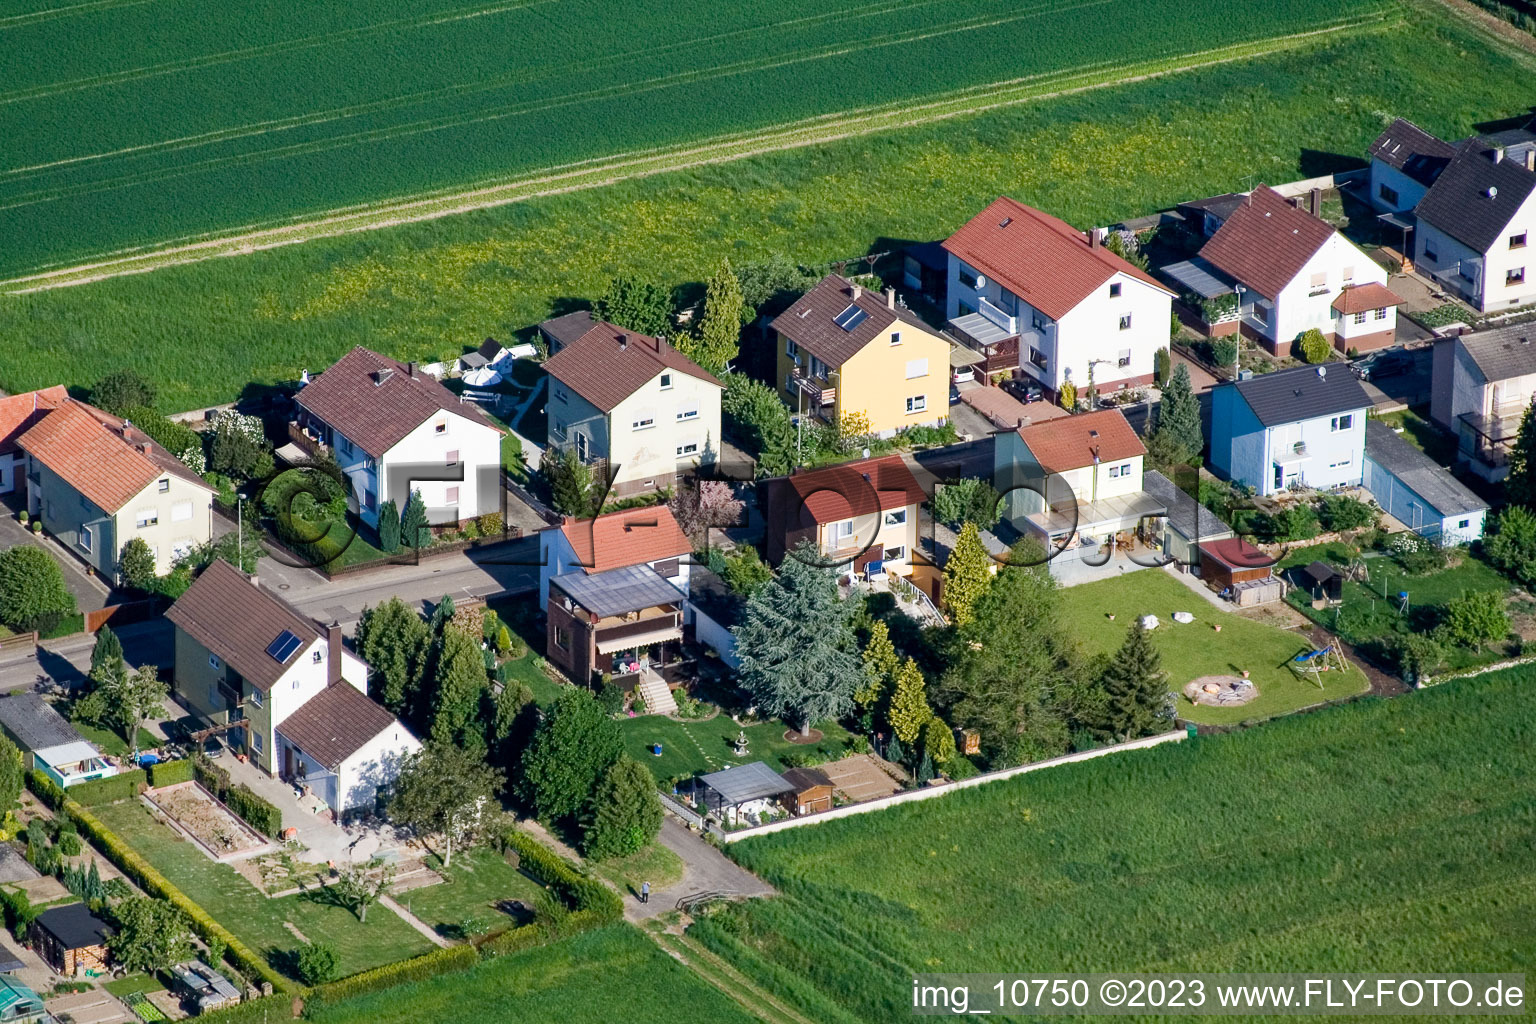 Freckenfeld im Bundesland Rheinland-Pfalz, Deutschland aus der Drohnenperspektive